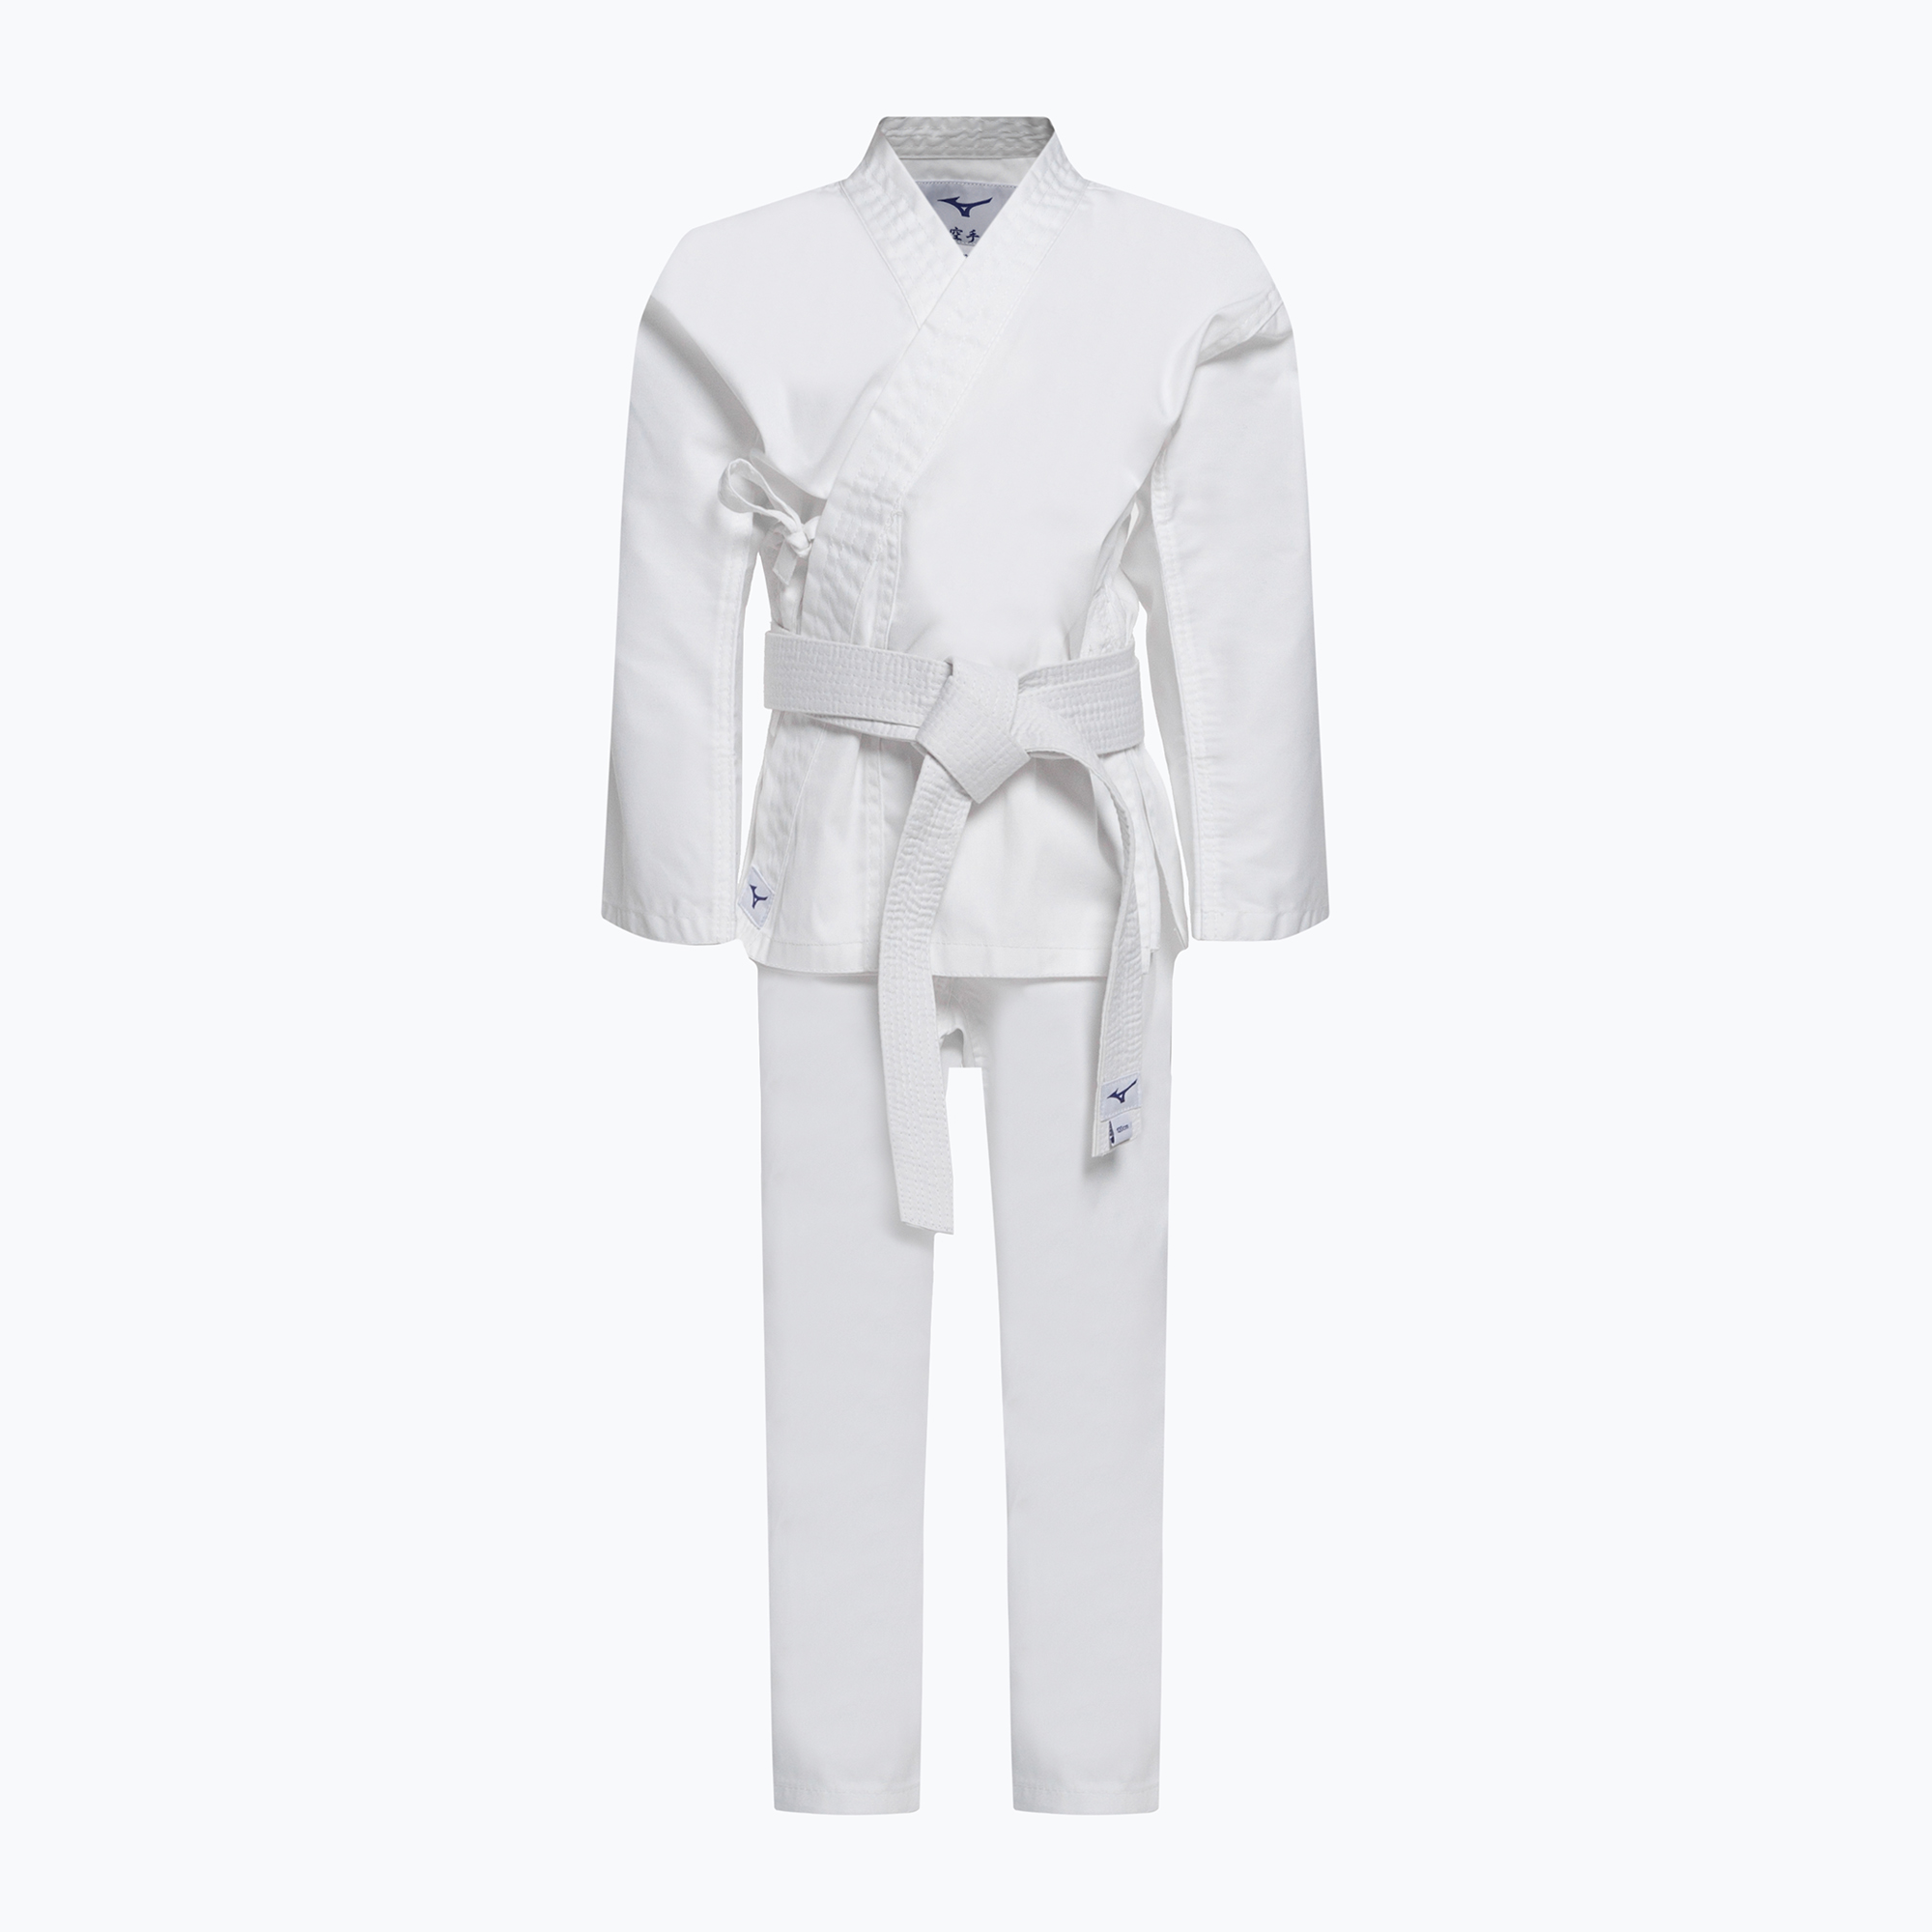 Mizuno Kiai pentru copii cu centură karategi alb 22GG2K200101_100